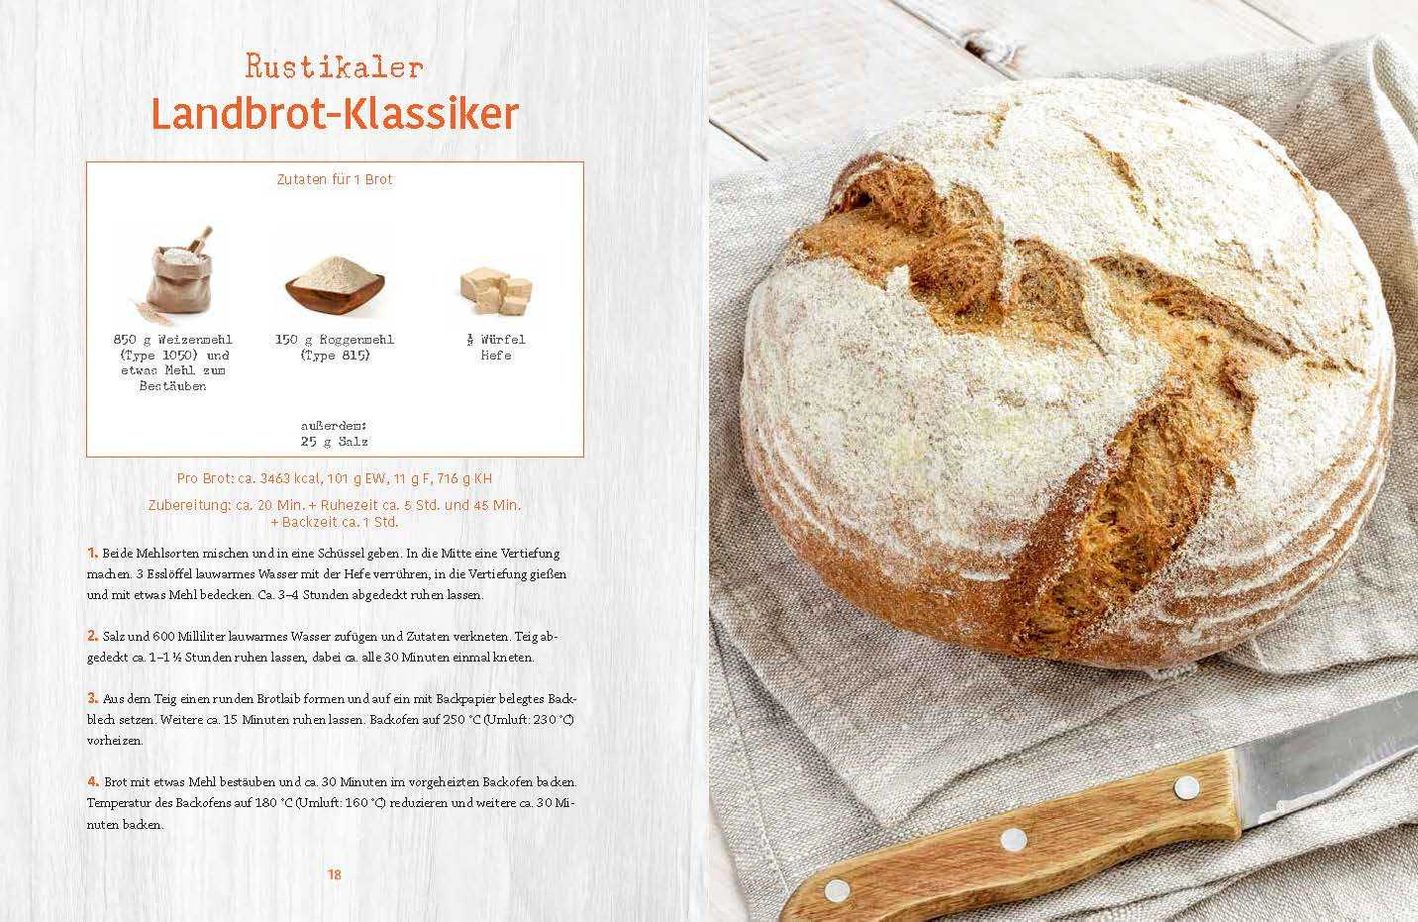 Einfach Brot backen mit nur 5 Zutaten - Weltbild-Sonderausgabe